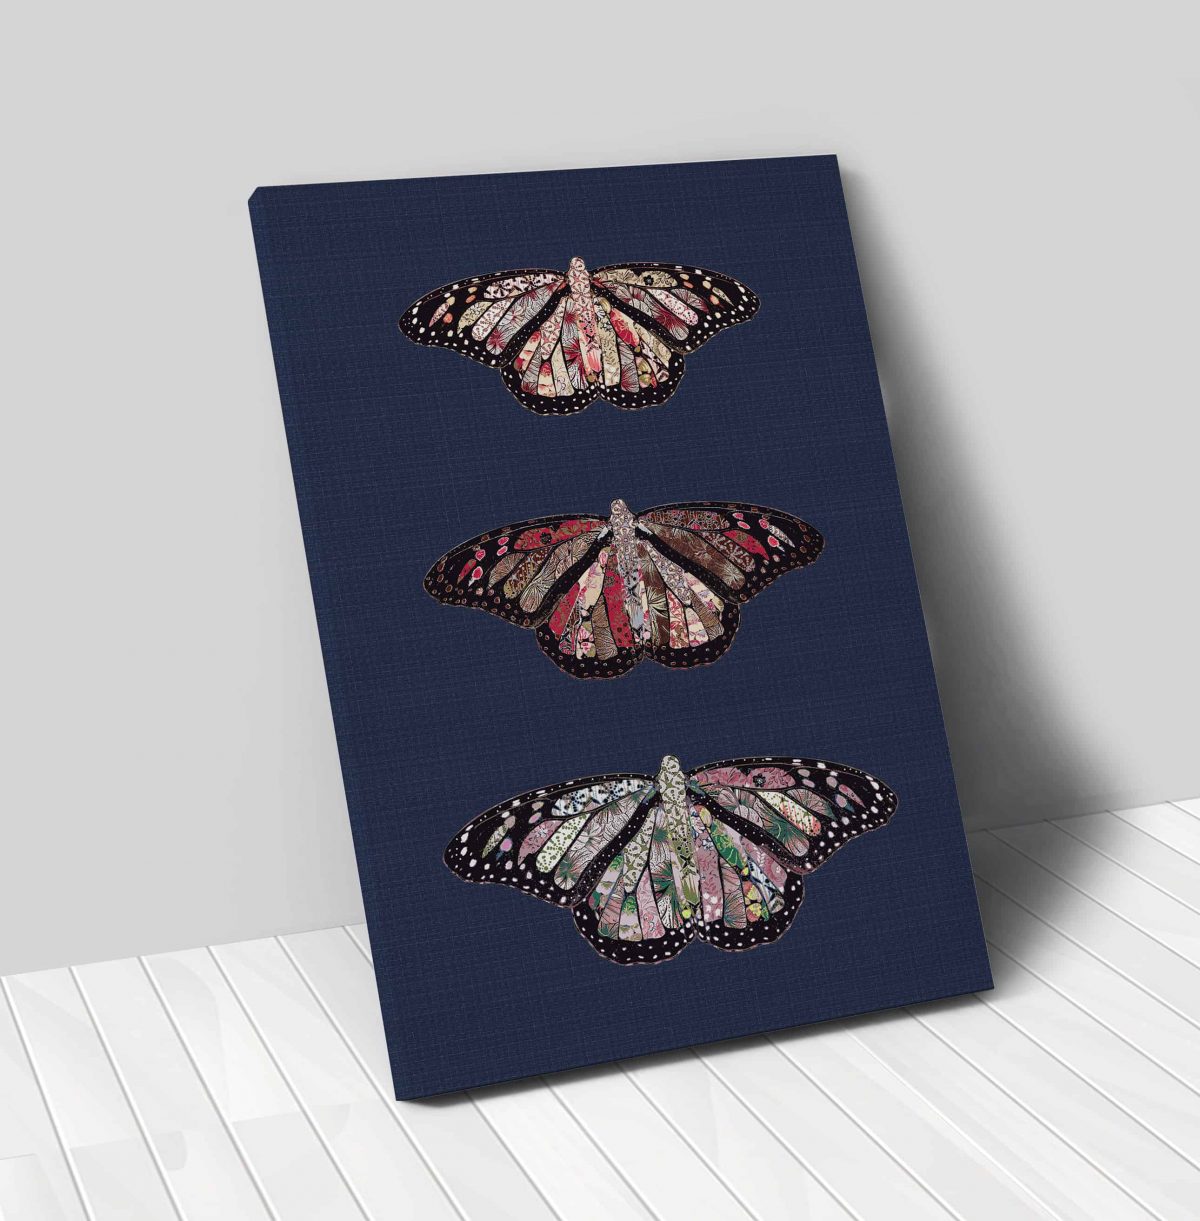 Butterflies Rustic on Denim Vertical 24x36 canvas 01 vertical